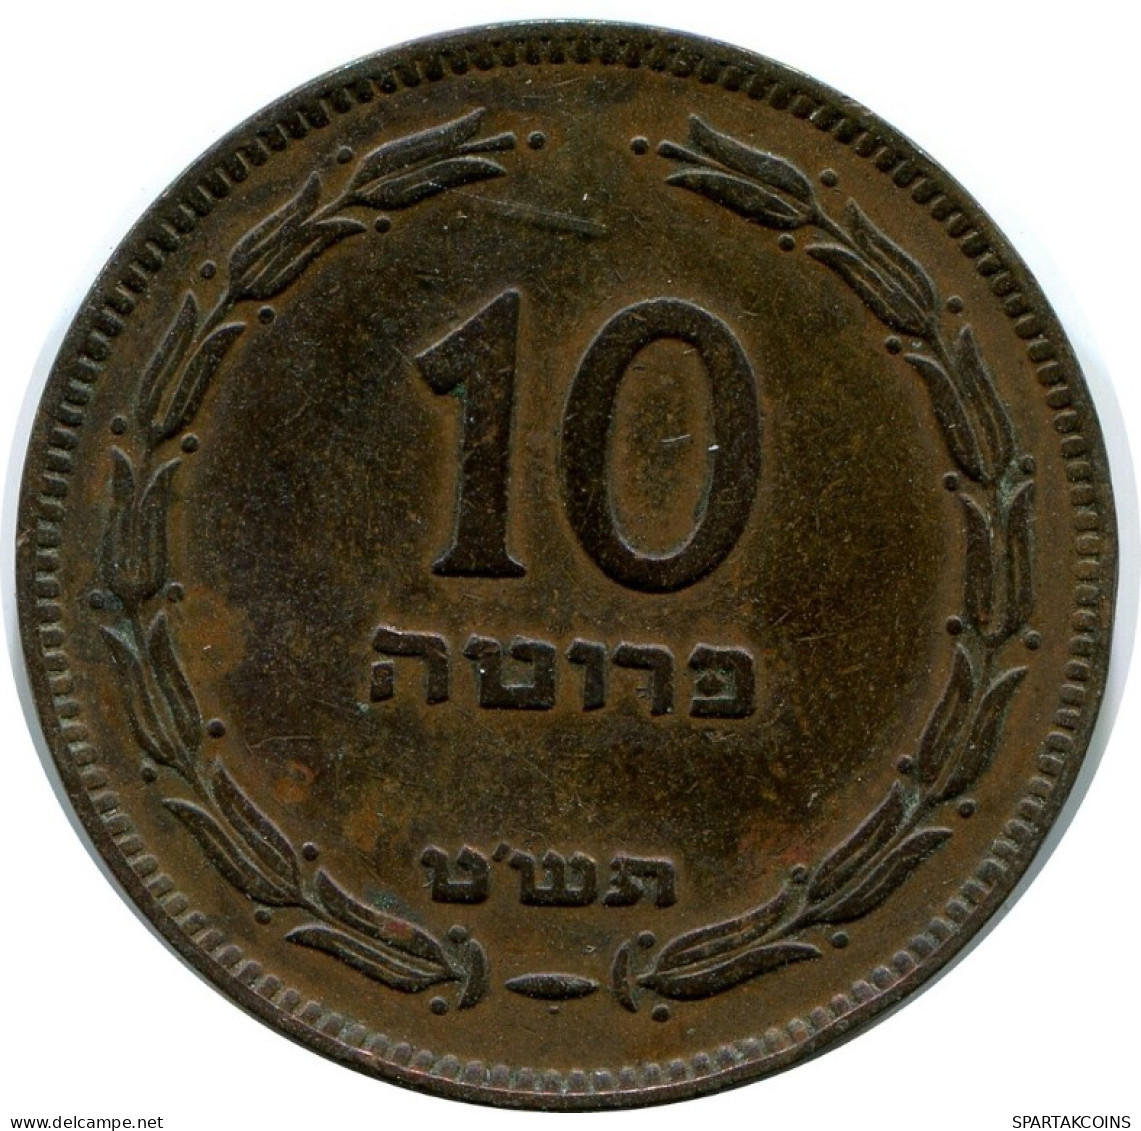 10 PRUTA 1949 ISRAEL Coin #AH866.U.A - Israele